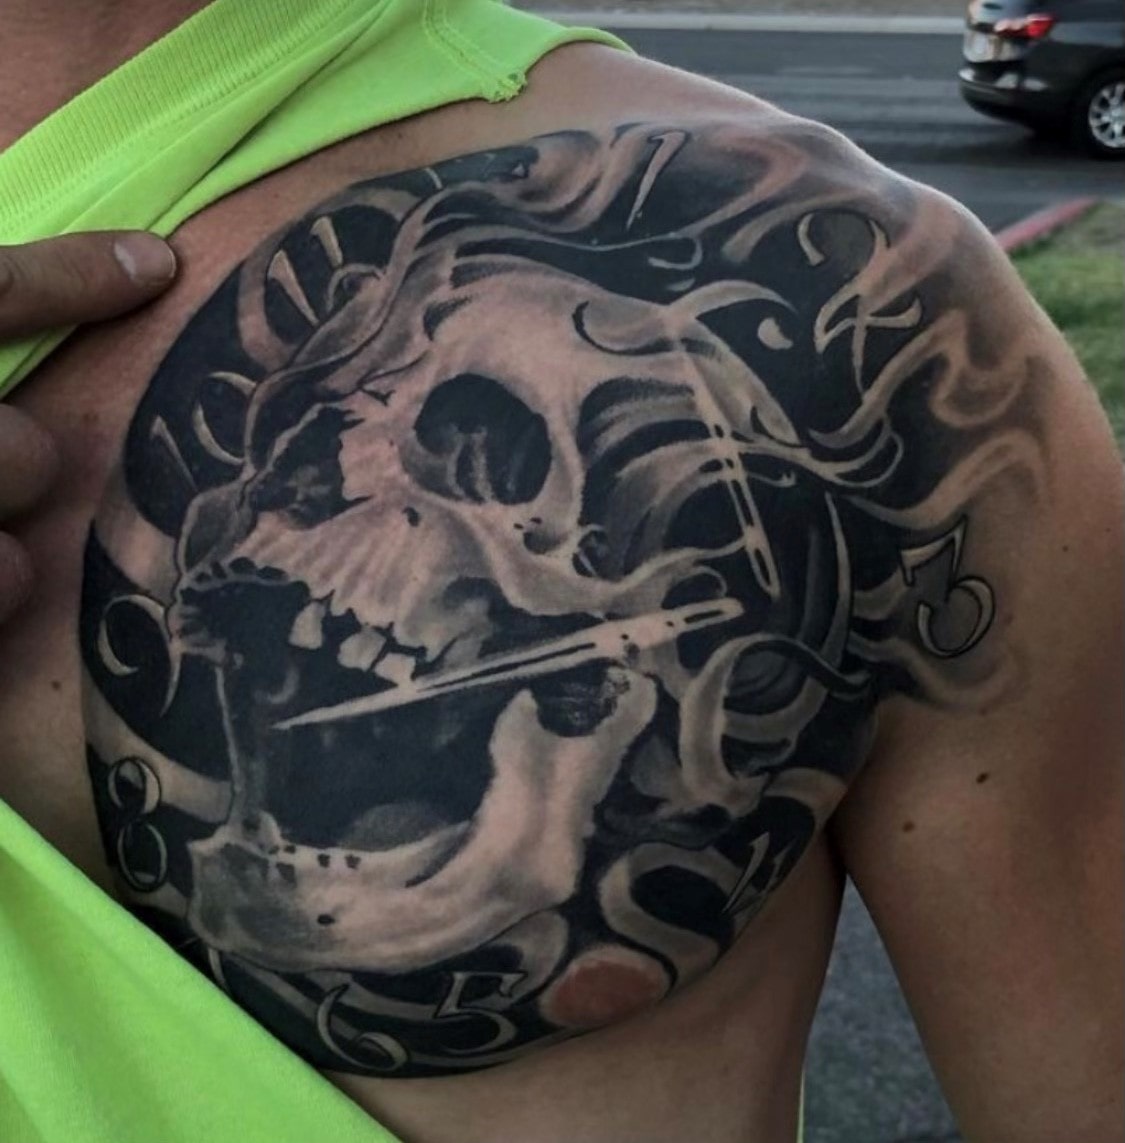 skull-with-nails-tattoo-art - Las Vegas - Trip Ink Tattoo Shop